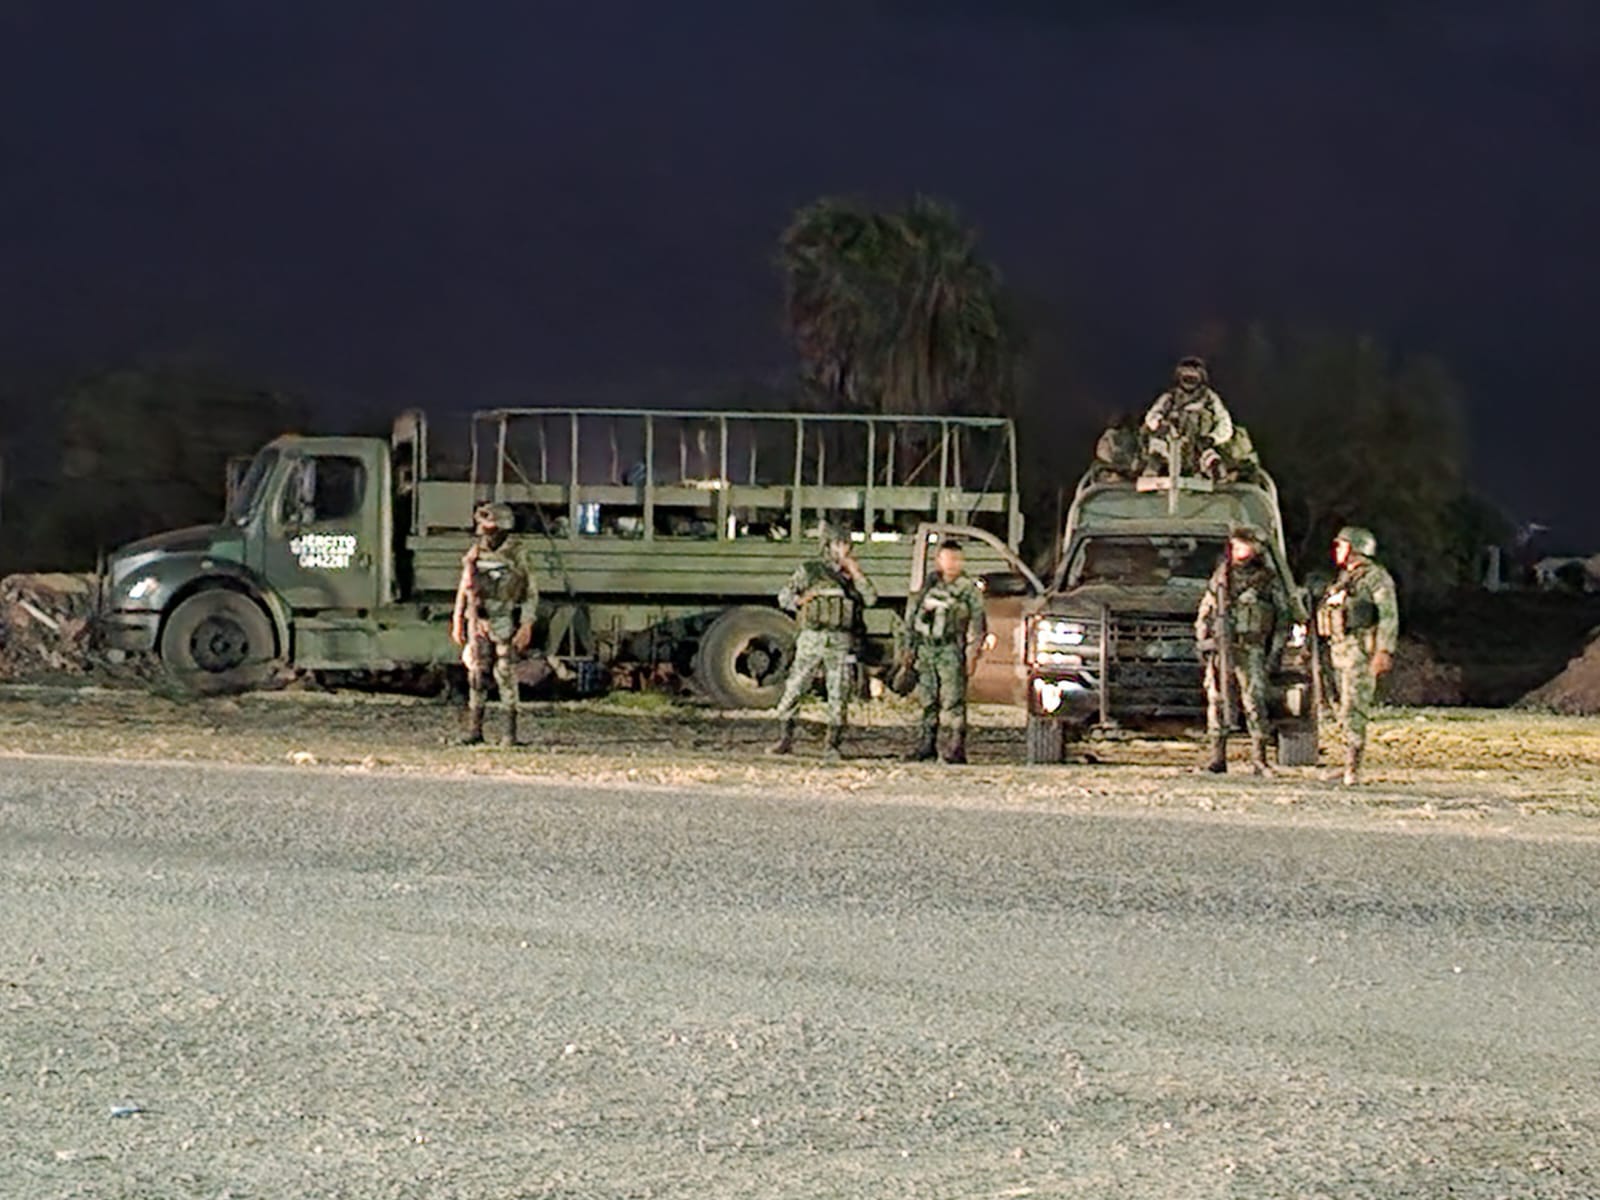 Agreden a militares en Quilá, Culiacán; aseguran camioneta con armamento 